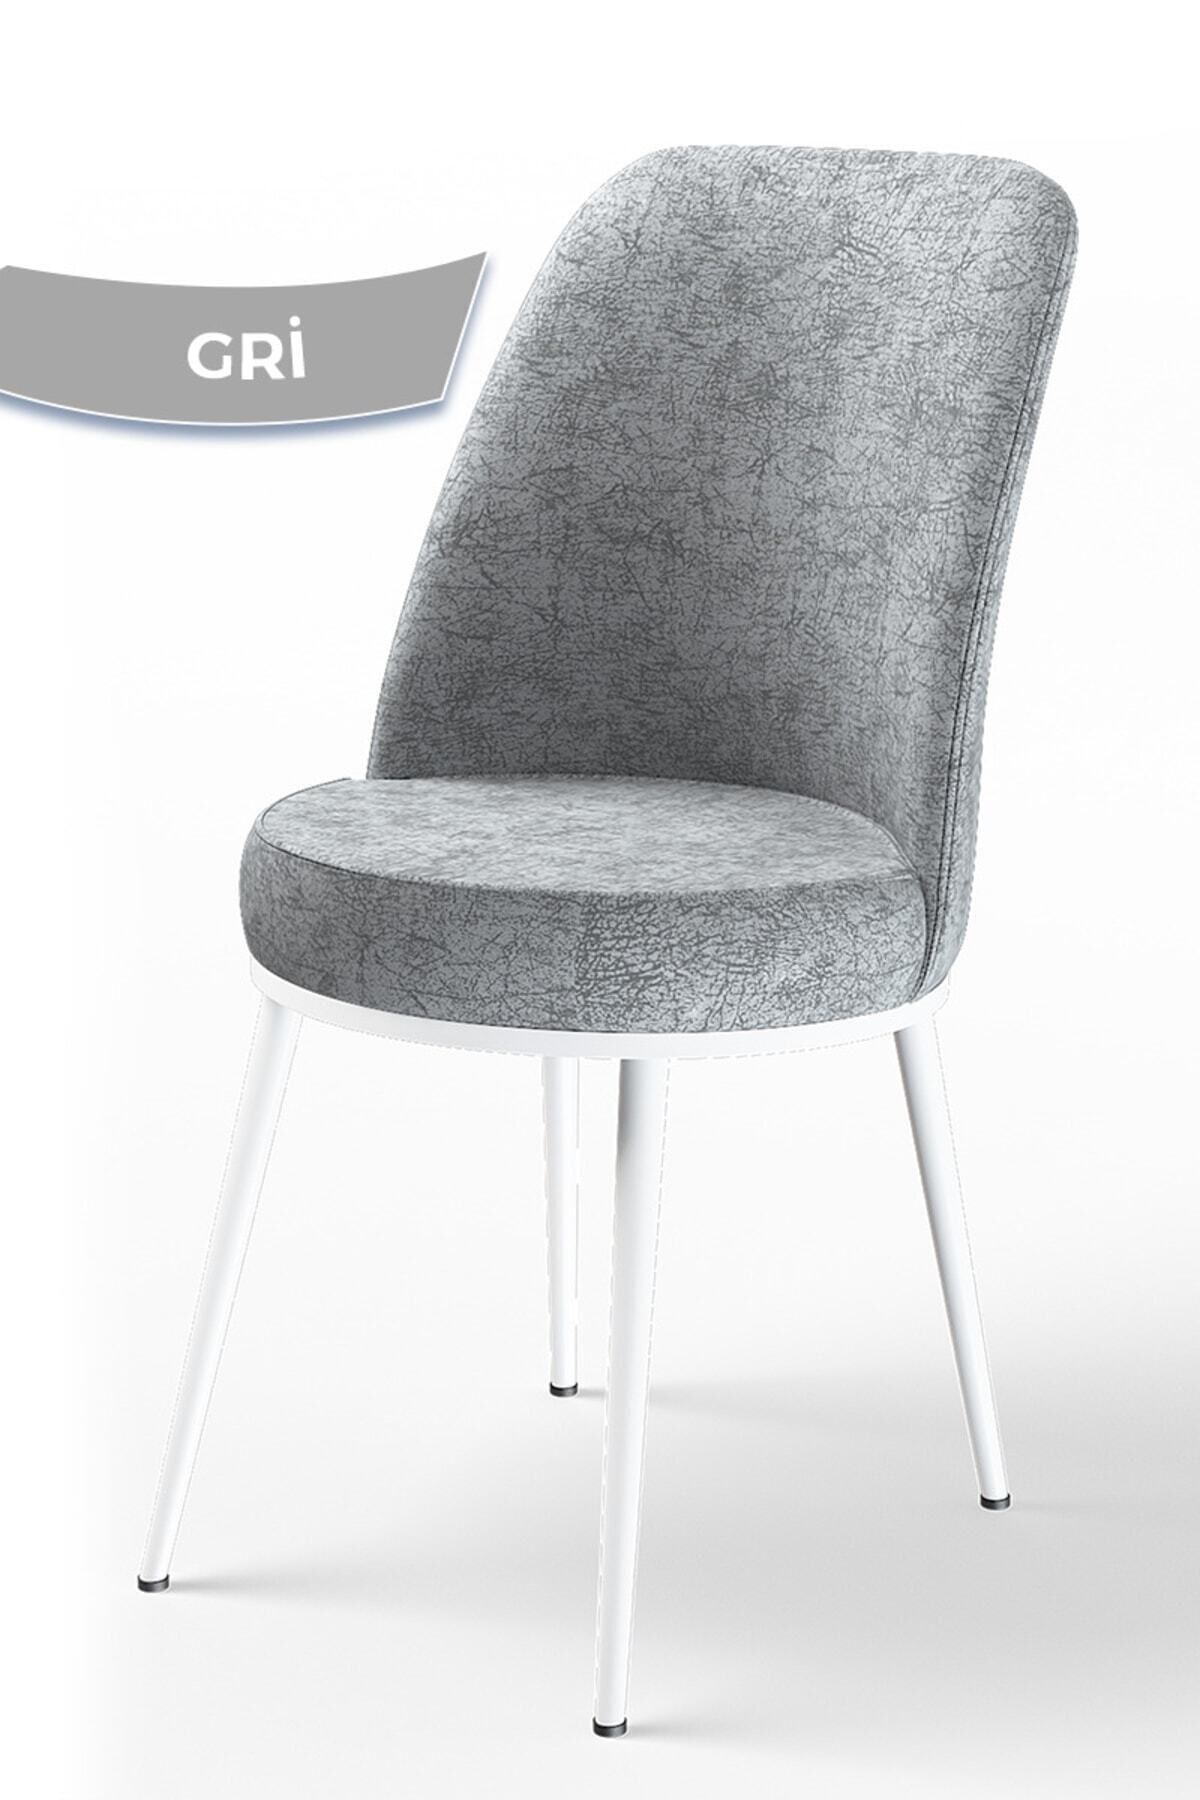 Canisa Concept Dexa Serisi Mutfak Sandalyesi, Gri Sandalye Ayaklar Beyaz